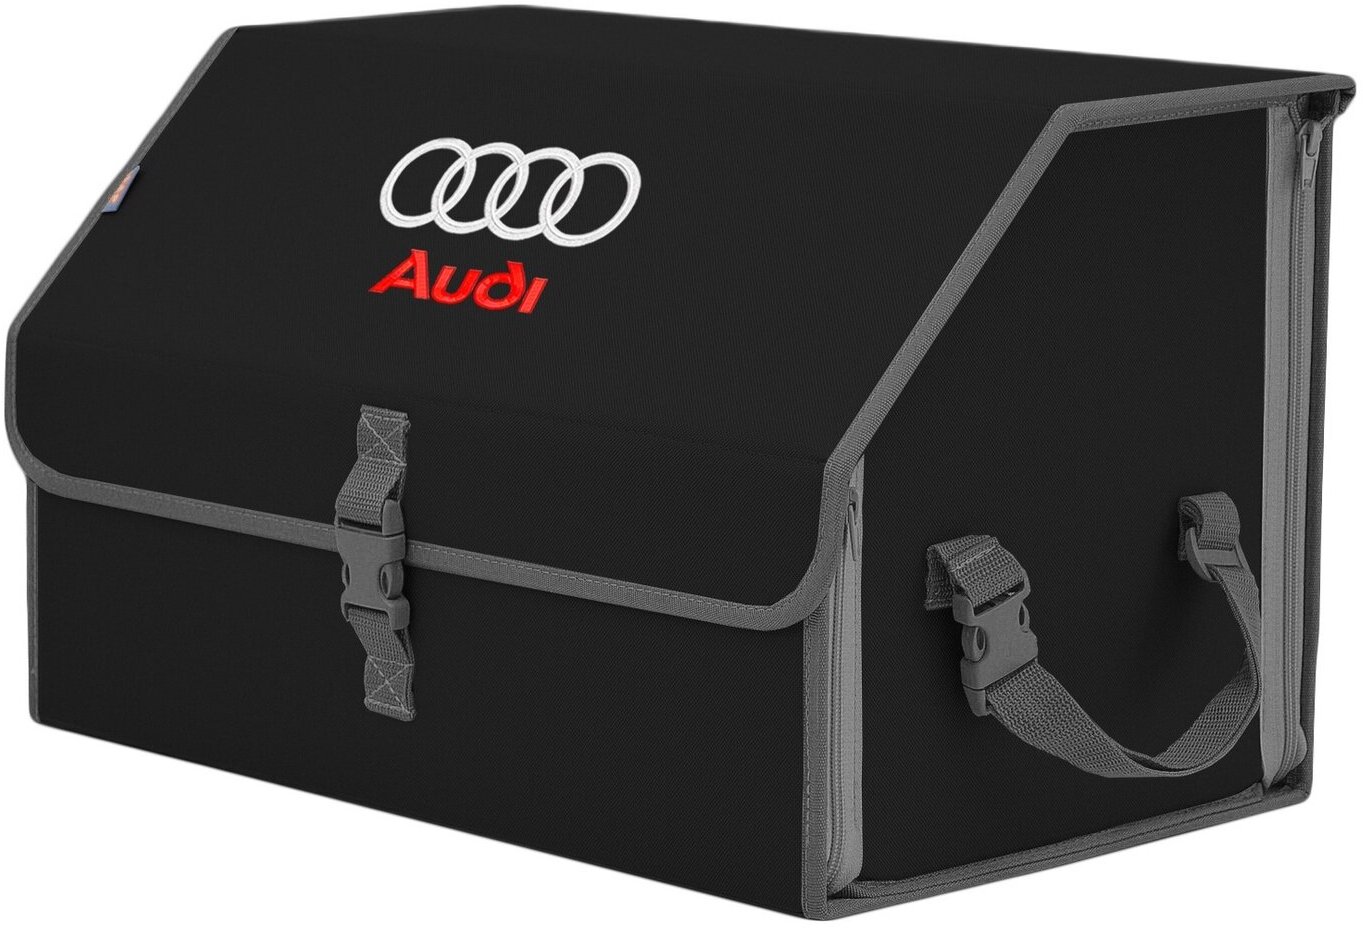 Органайзер-саквояж в багажник "Союз" (размер L). Цвет: черный с серой окантовкой и вышивкой Audi (Ауди).